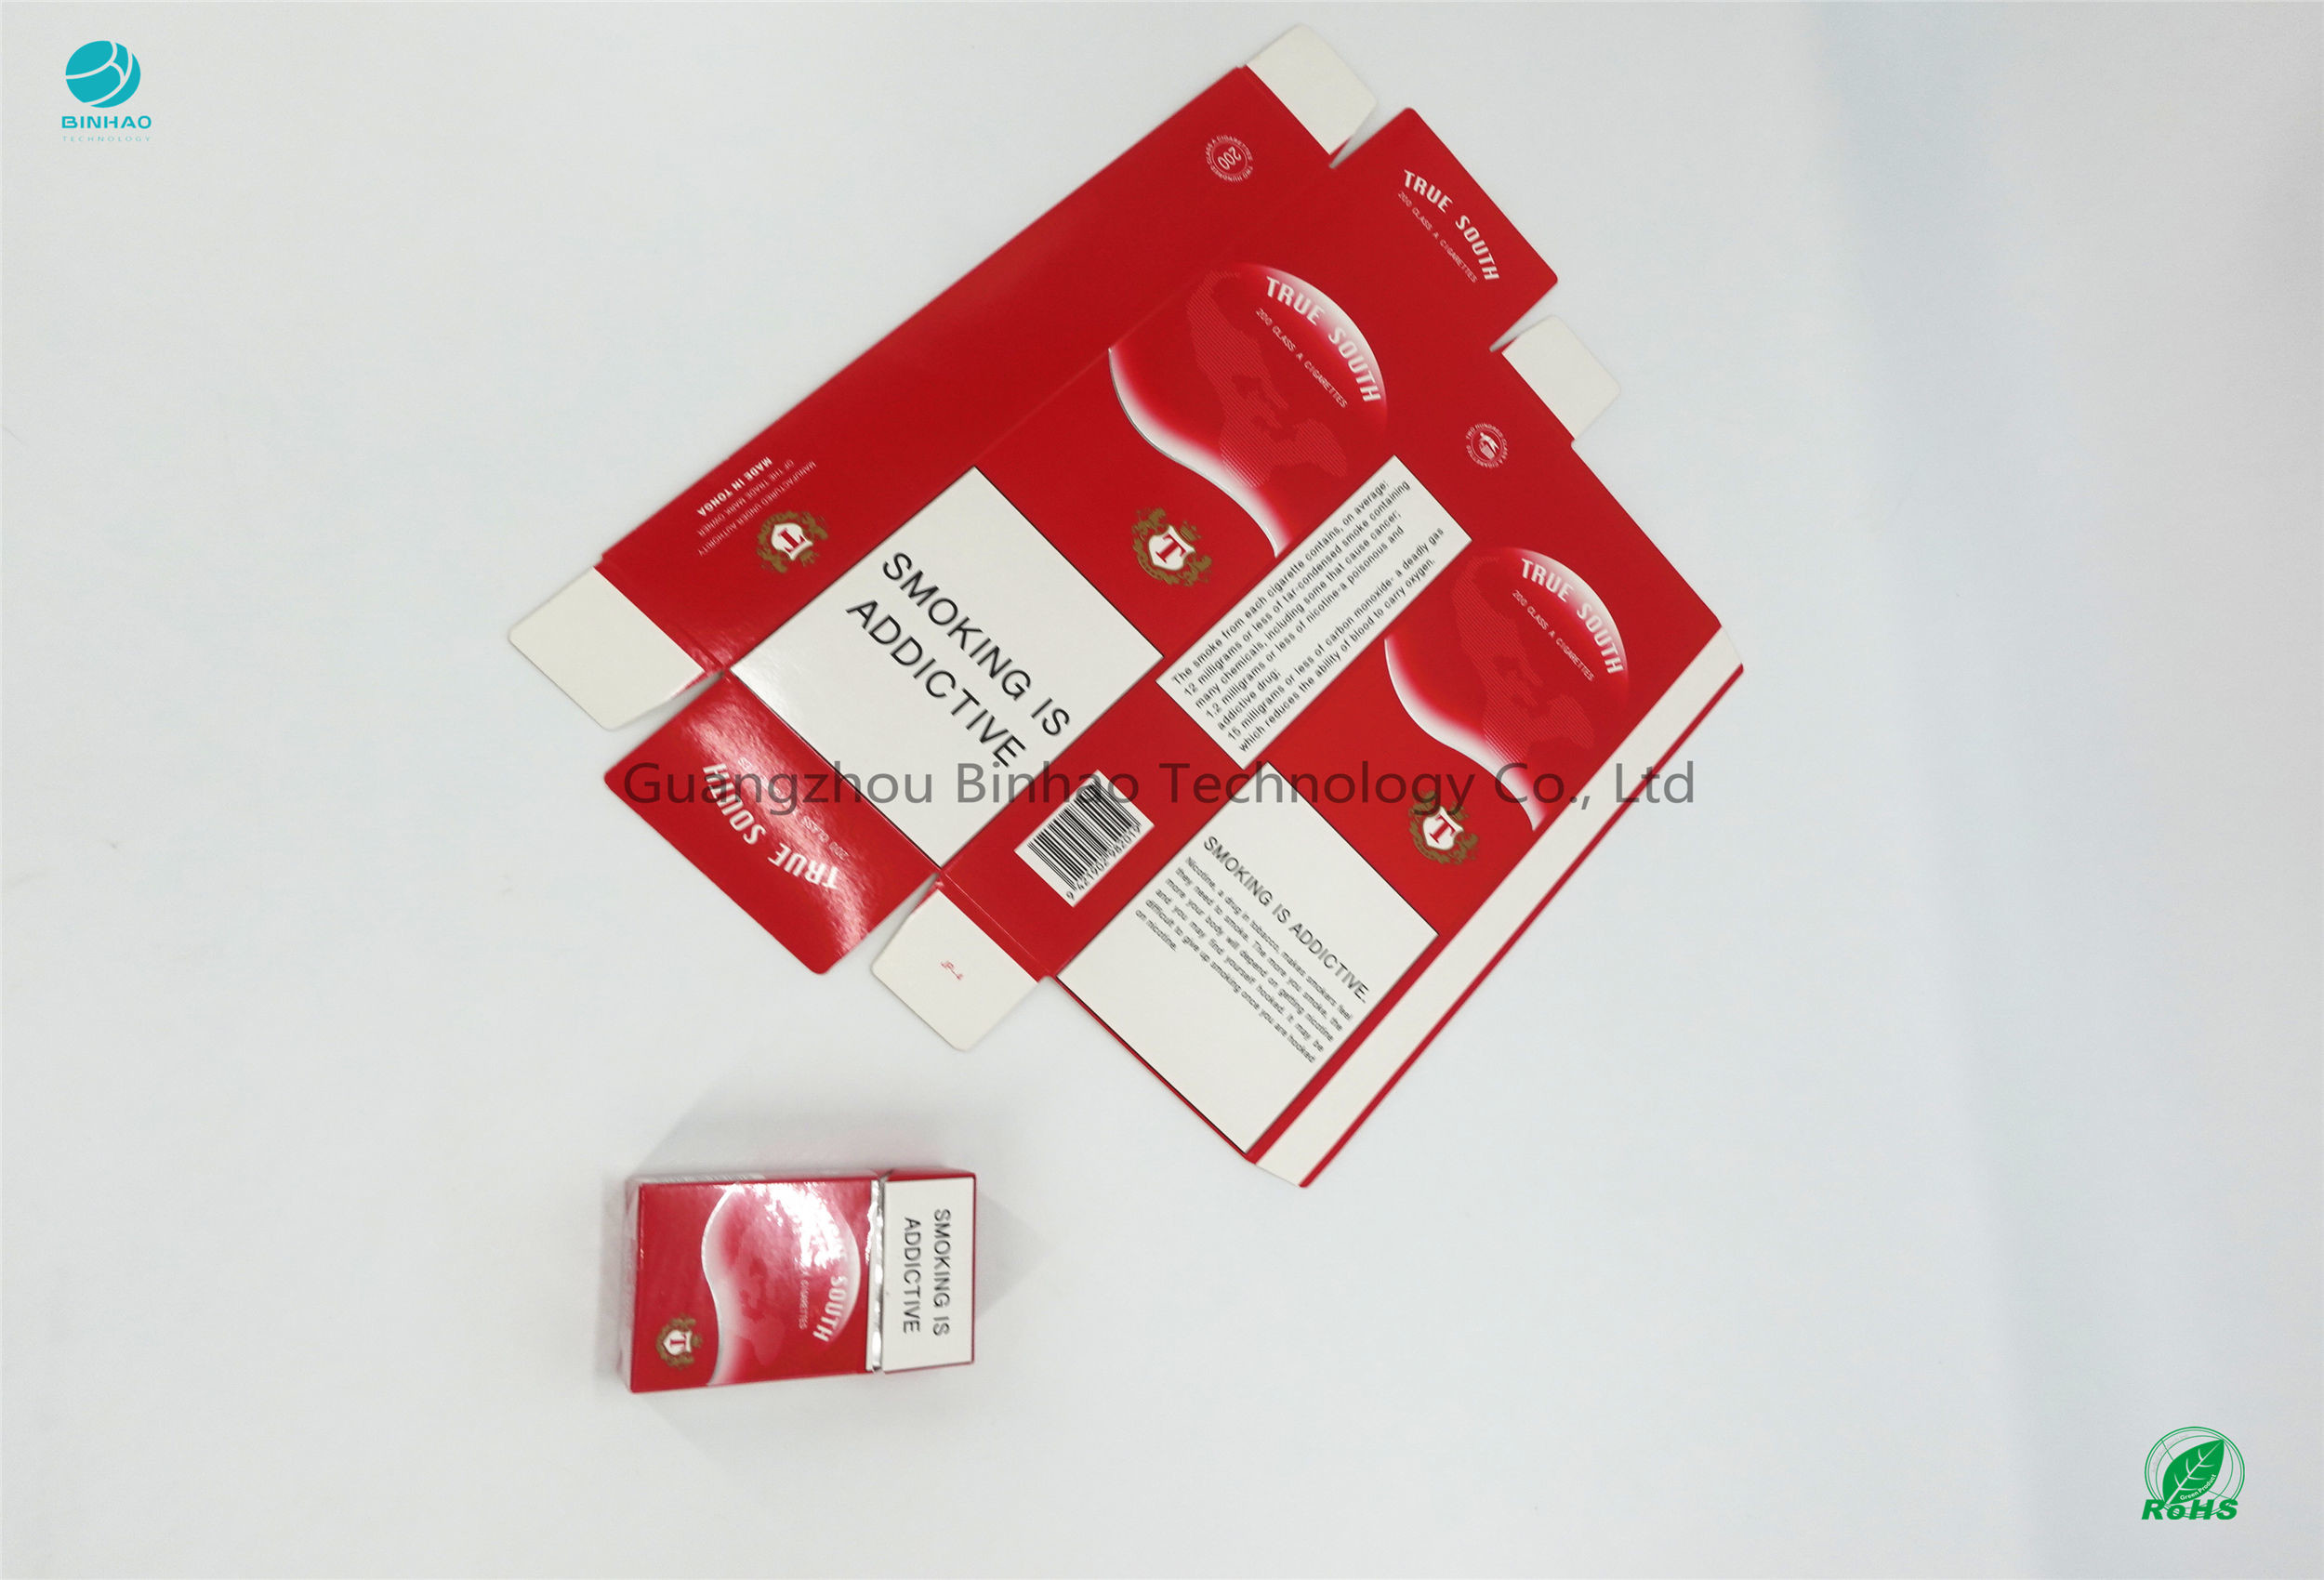 Boîte de bon carton d'imprimabilité de la rigidité 89% de porte-cigarettes longue